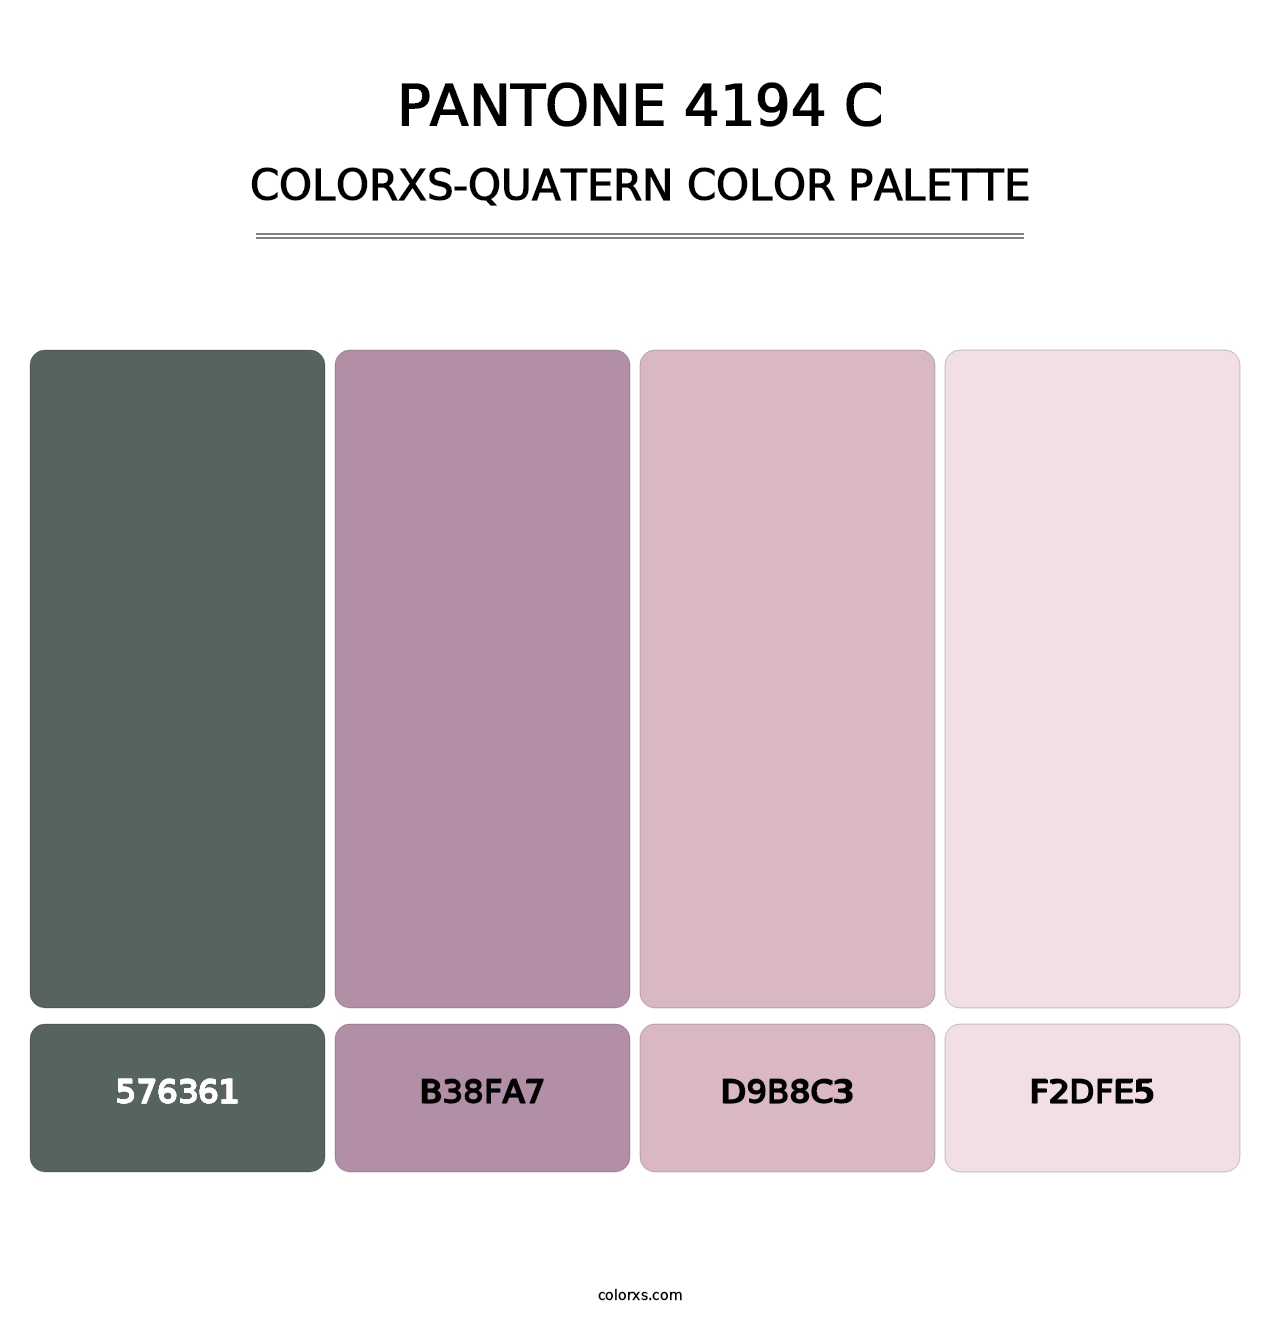 PANTONE 4194 C - Colorxs Quatern Palette